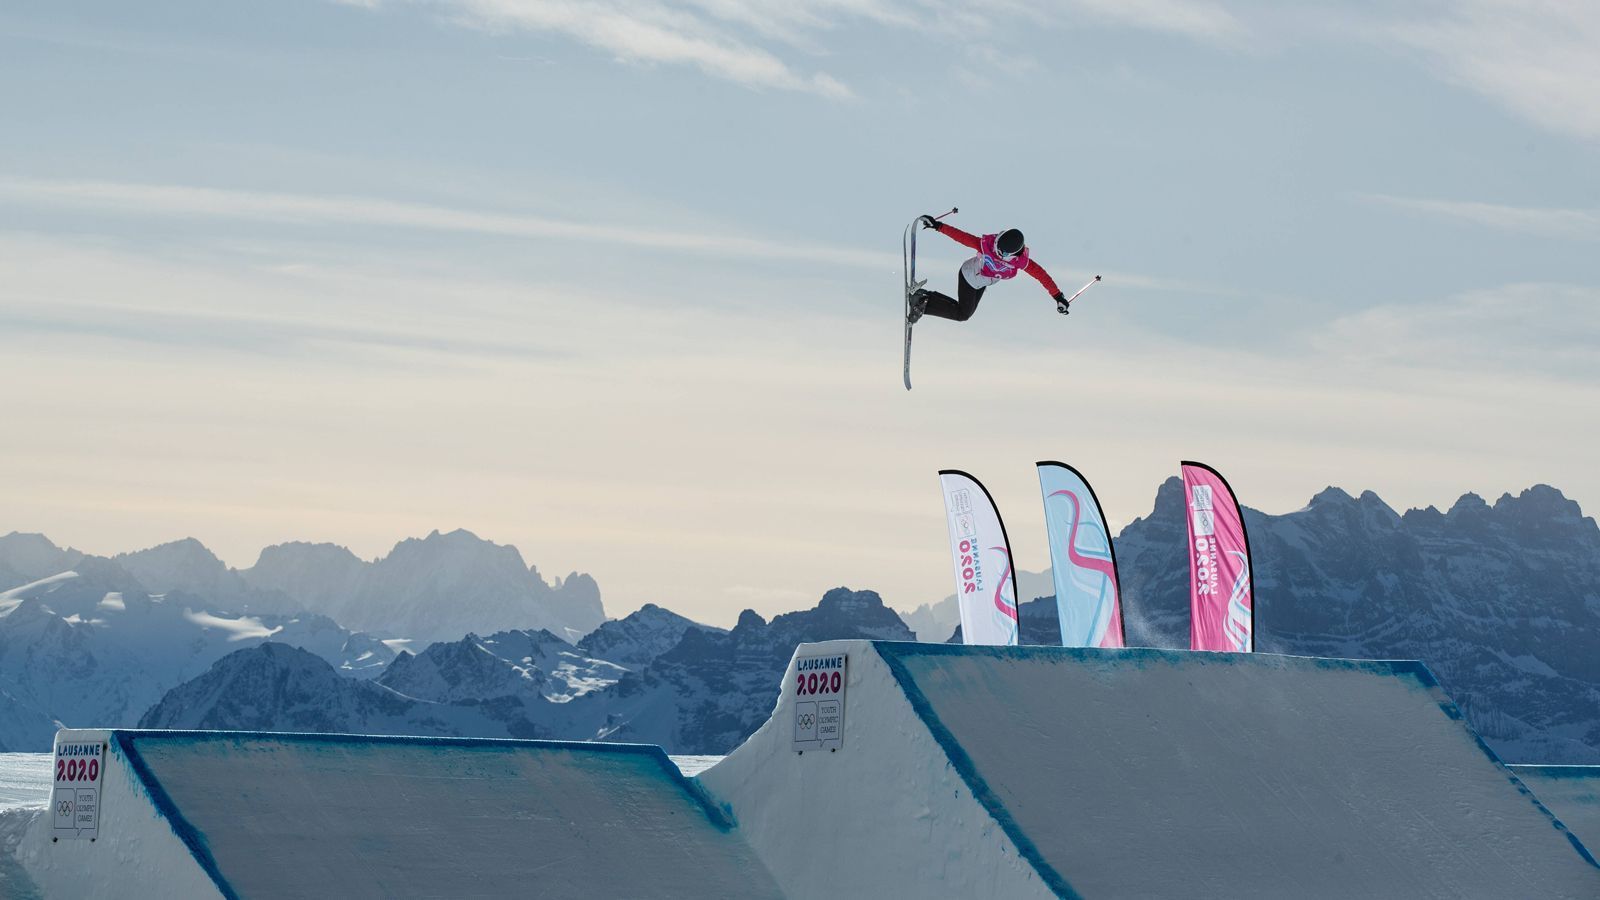 
                <strong>Freestyle-Skiing: Big Air für Männer und Frauen</strong><br>
                Auch das Big Air ist eine Wettkampfdisziplin des Freestyle-Skiings. Dabei geht es darum, auf Skiern oder mit dem Snowboard über eine Sprungschanze zu fahren und in der Luft möglichst anspruchsvolle Tricks zu zeigen, an welche sich eine sichere Landung anschließt. Das Big Air gilt dabei aufgrund der Flughöhe als besonders spektakulär. Im Rahmen der Snowboard-Wettbewerbe wurde die Disziplin bereits bei den Spielen 2018 in Pyeongchang ausgetragen. In Peking wird es den Wettkampf nun auch erstmals auf Skiern für Männer und Frauen zu sehen geben.
              